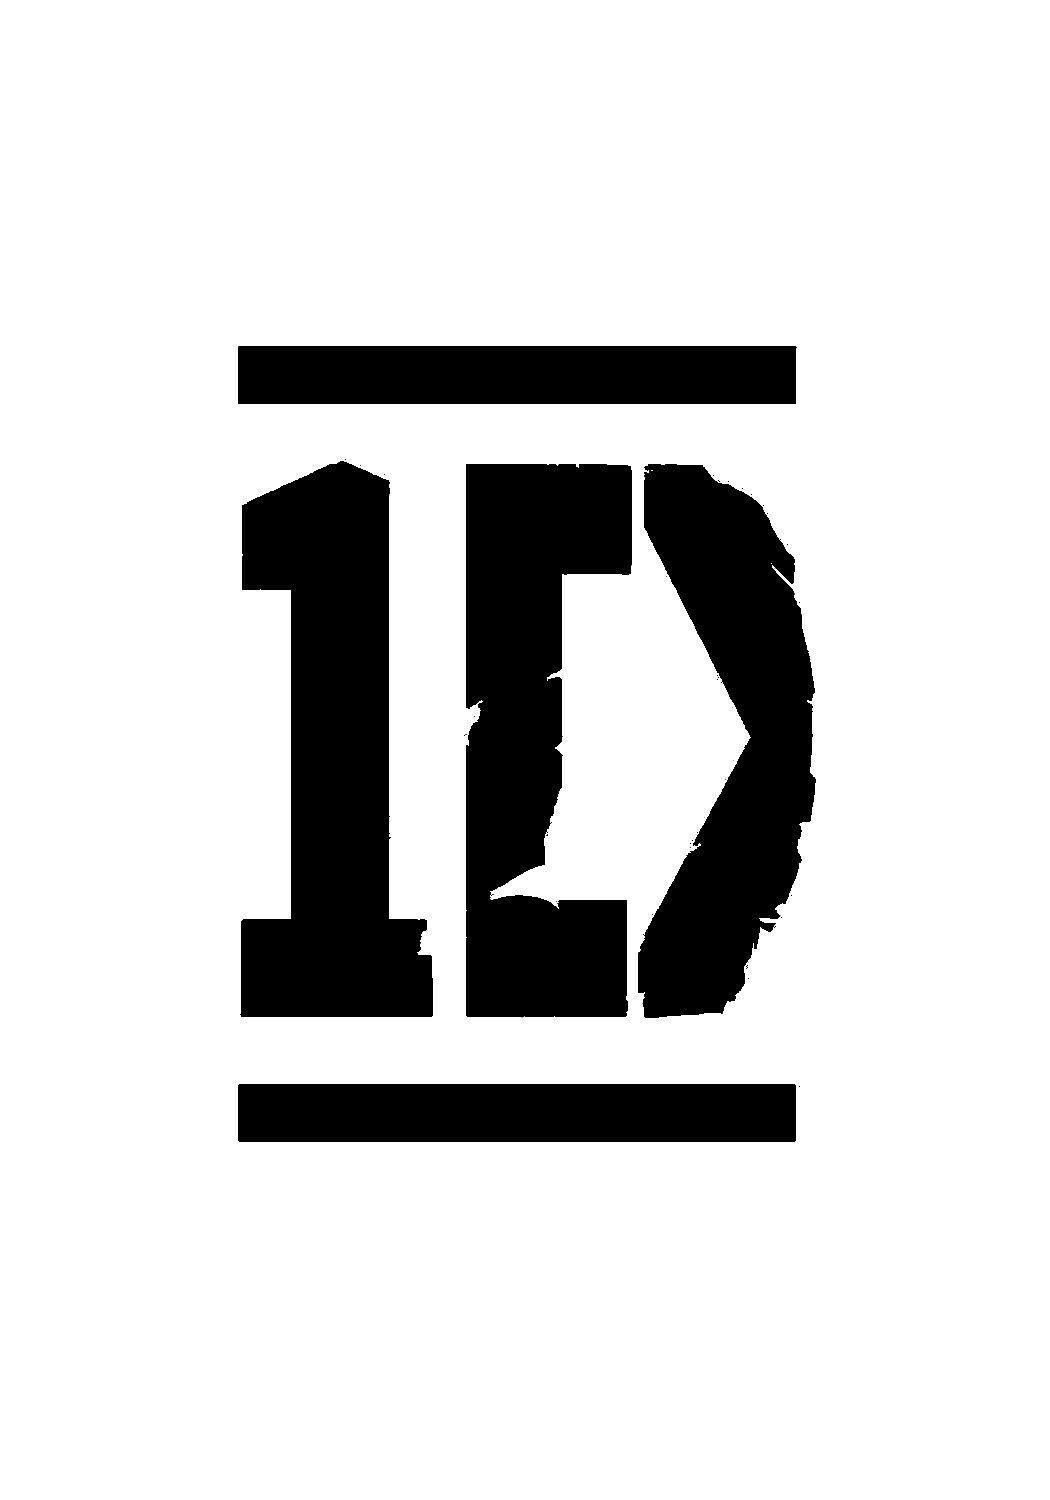 One Direction Logo - ONE DIRECTION logo | ONE DIRECTION LOGO | Pinterest | One direction ...